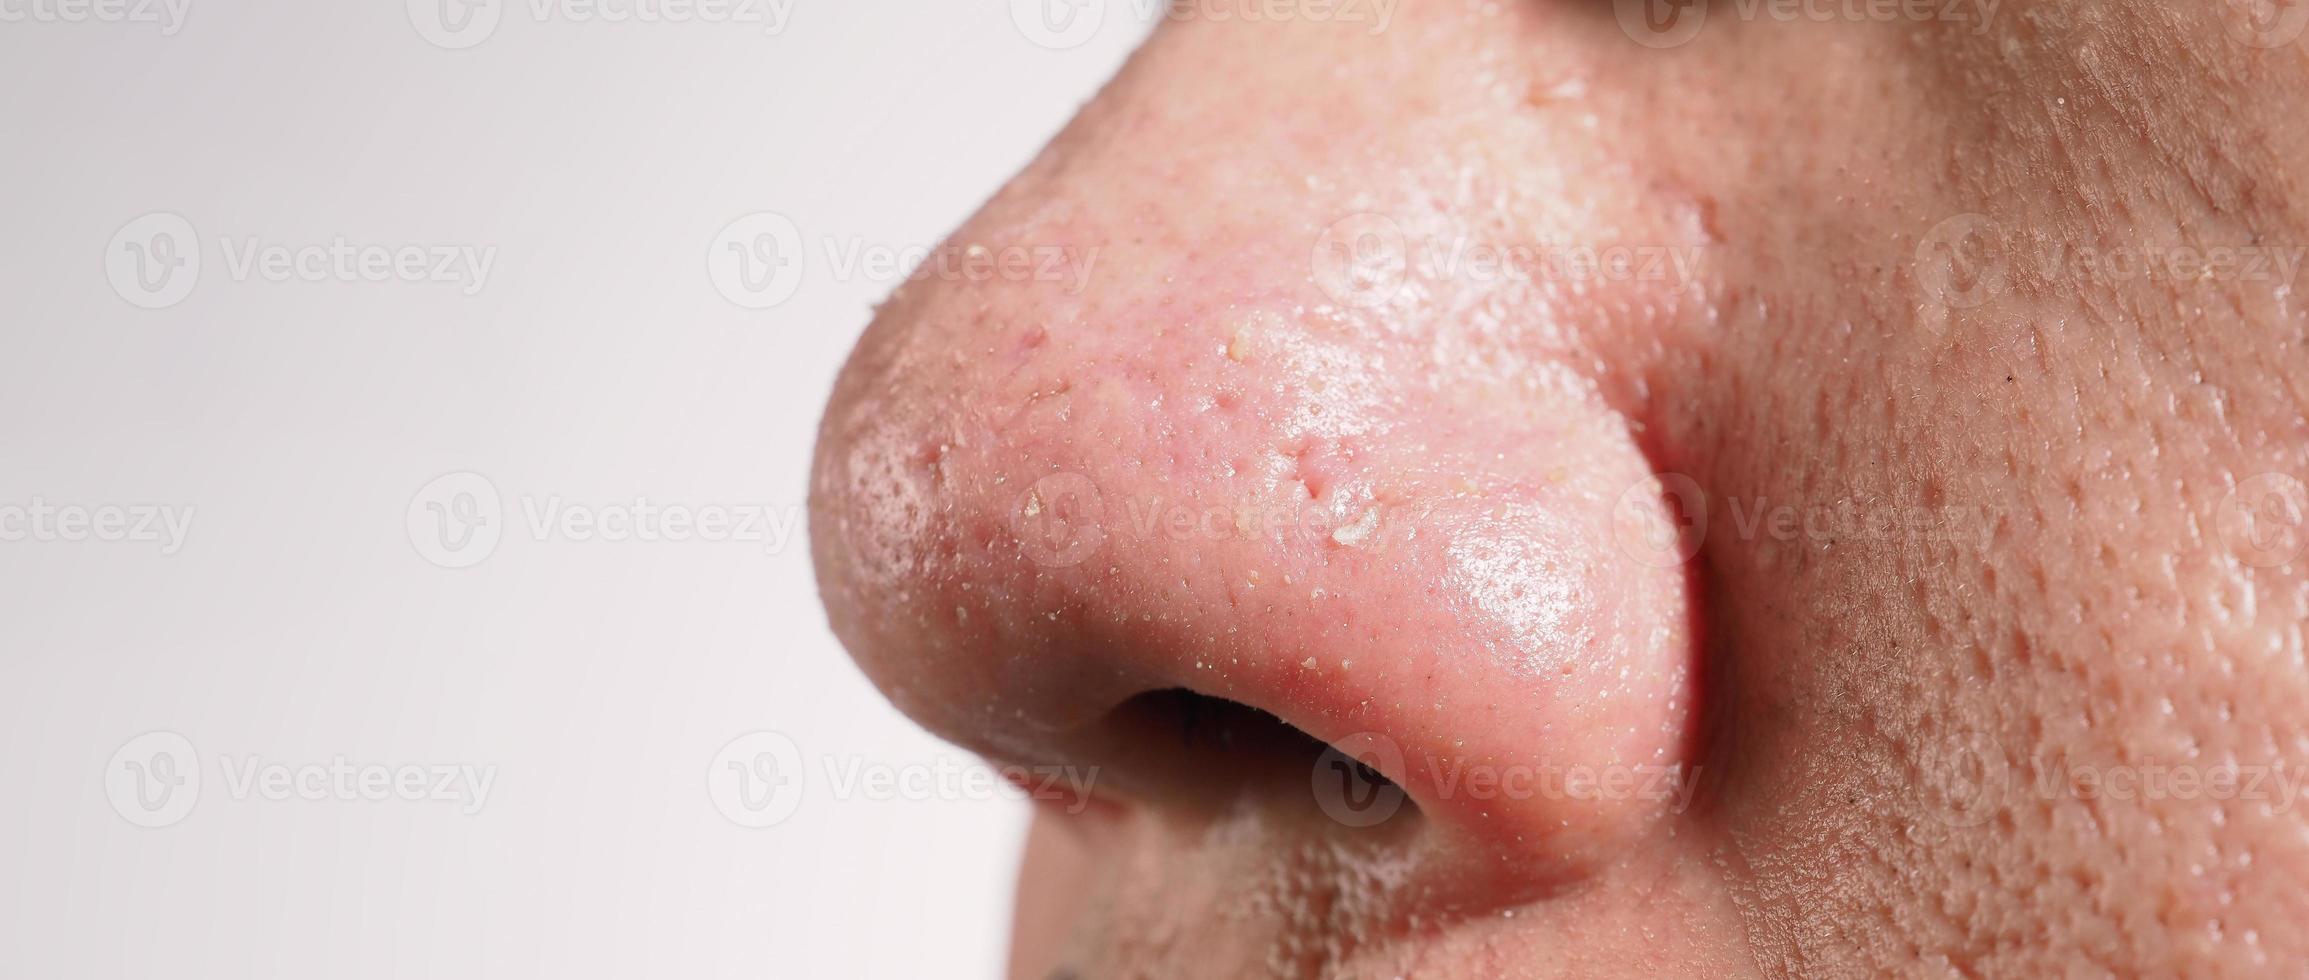 l'acné et les problèmes de pores. boutons blancs et noirs des pores du nez. photo